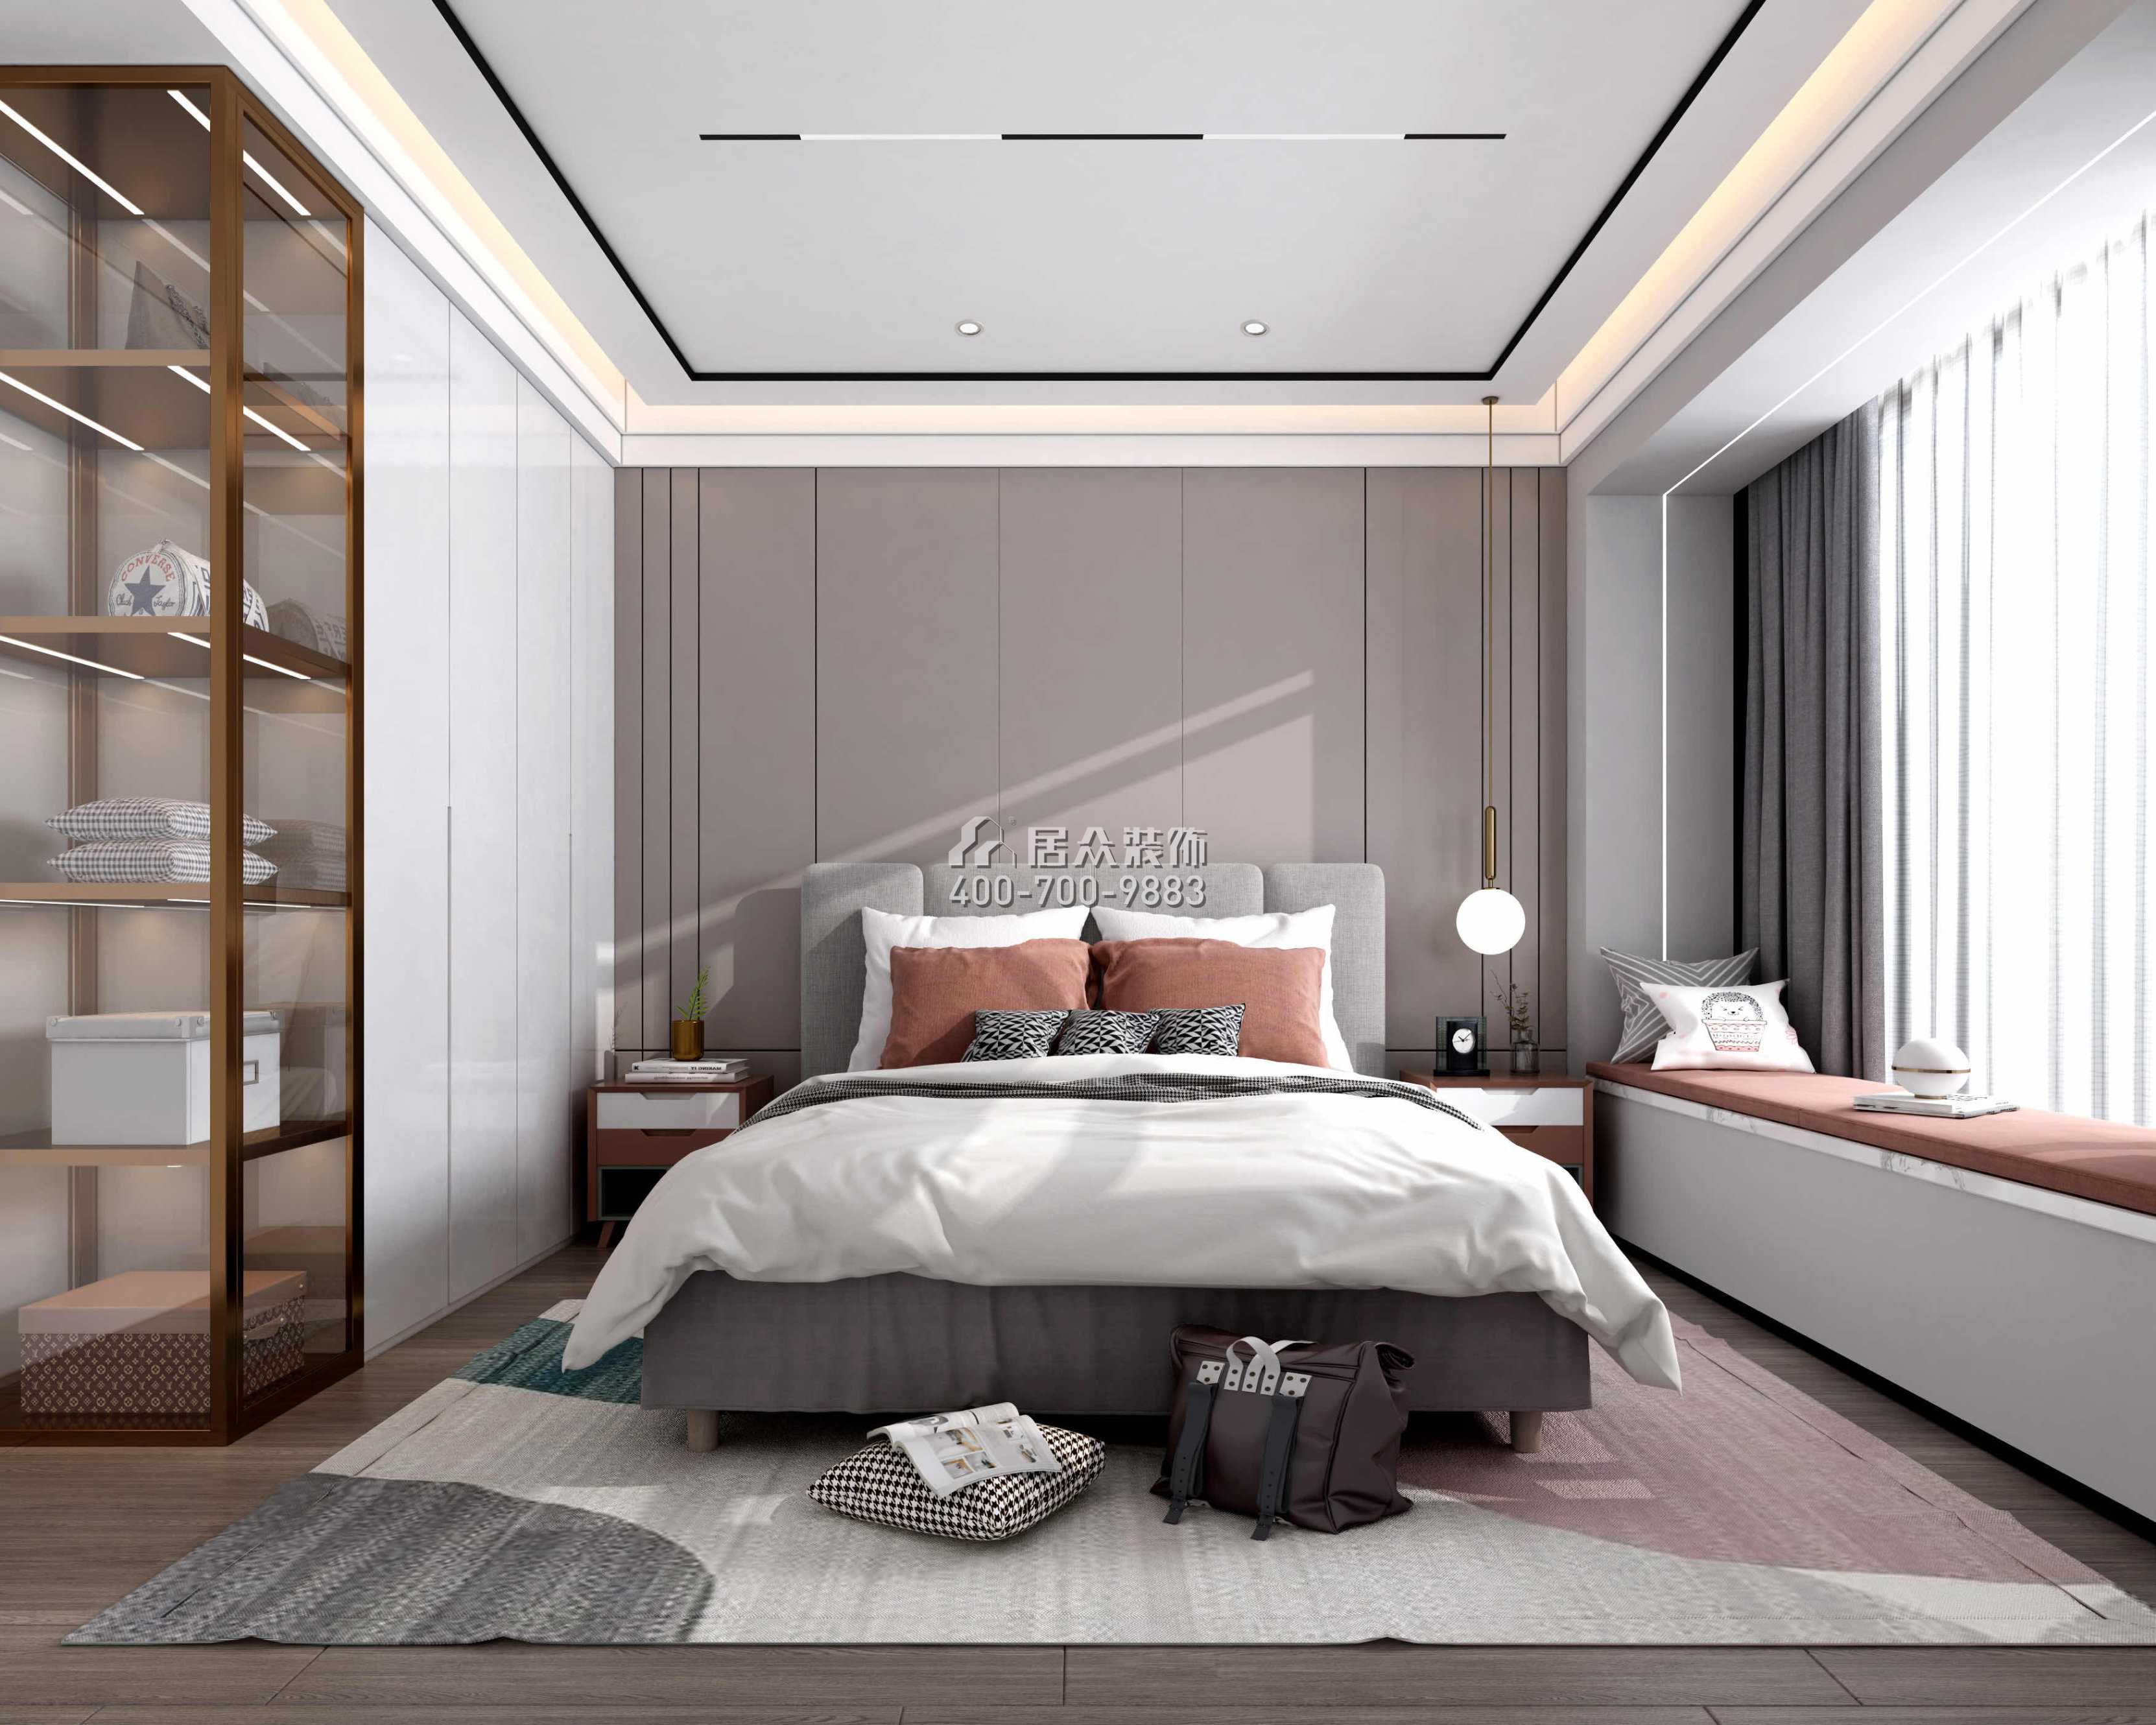 阳光粤海花园230平方米现代简约风格平层户型卧室装修效果图